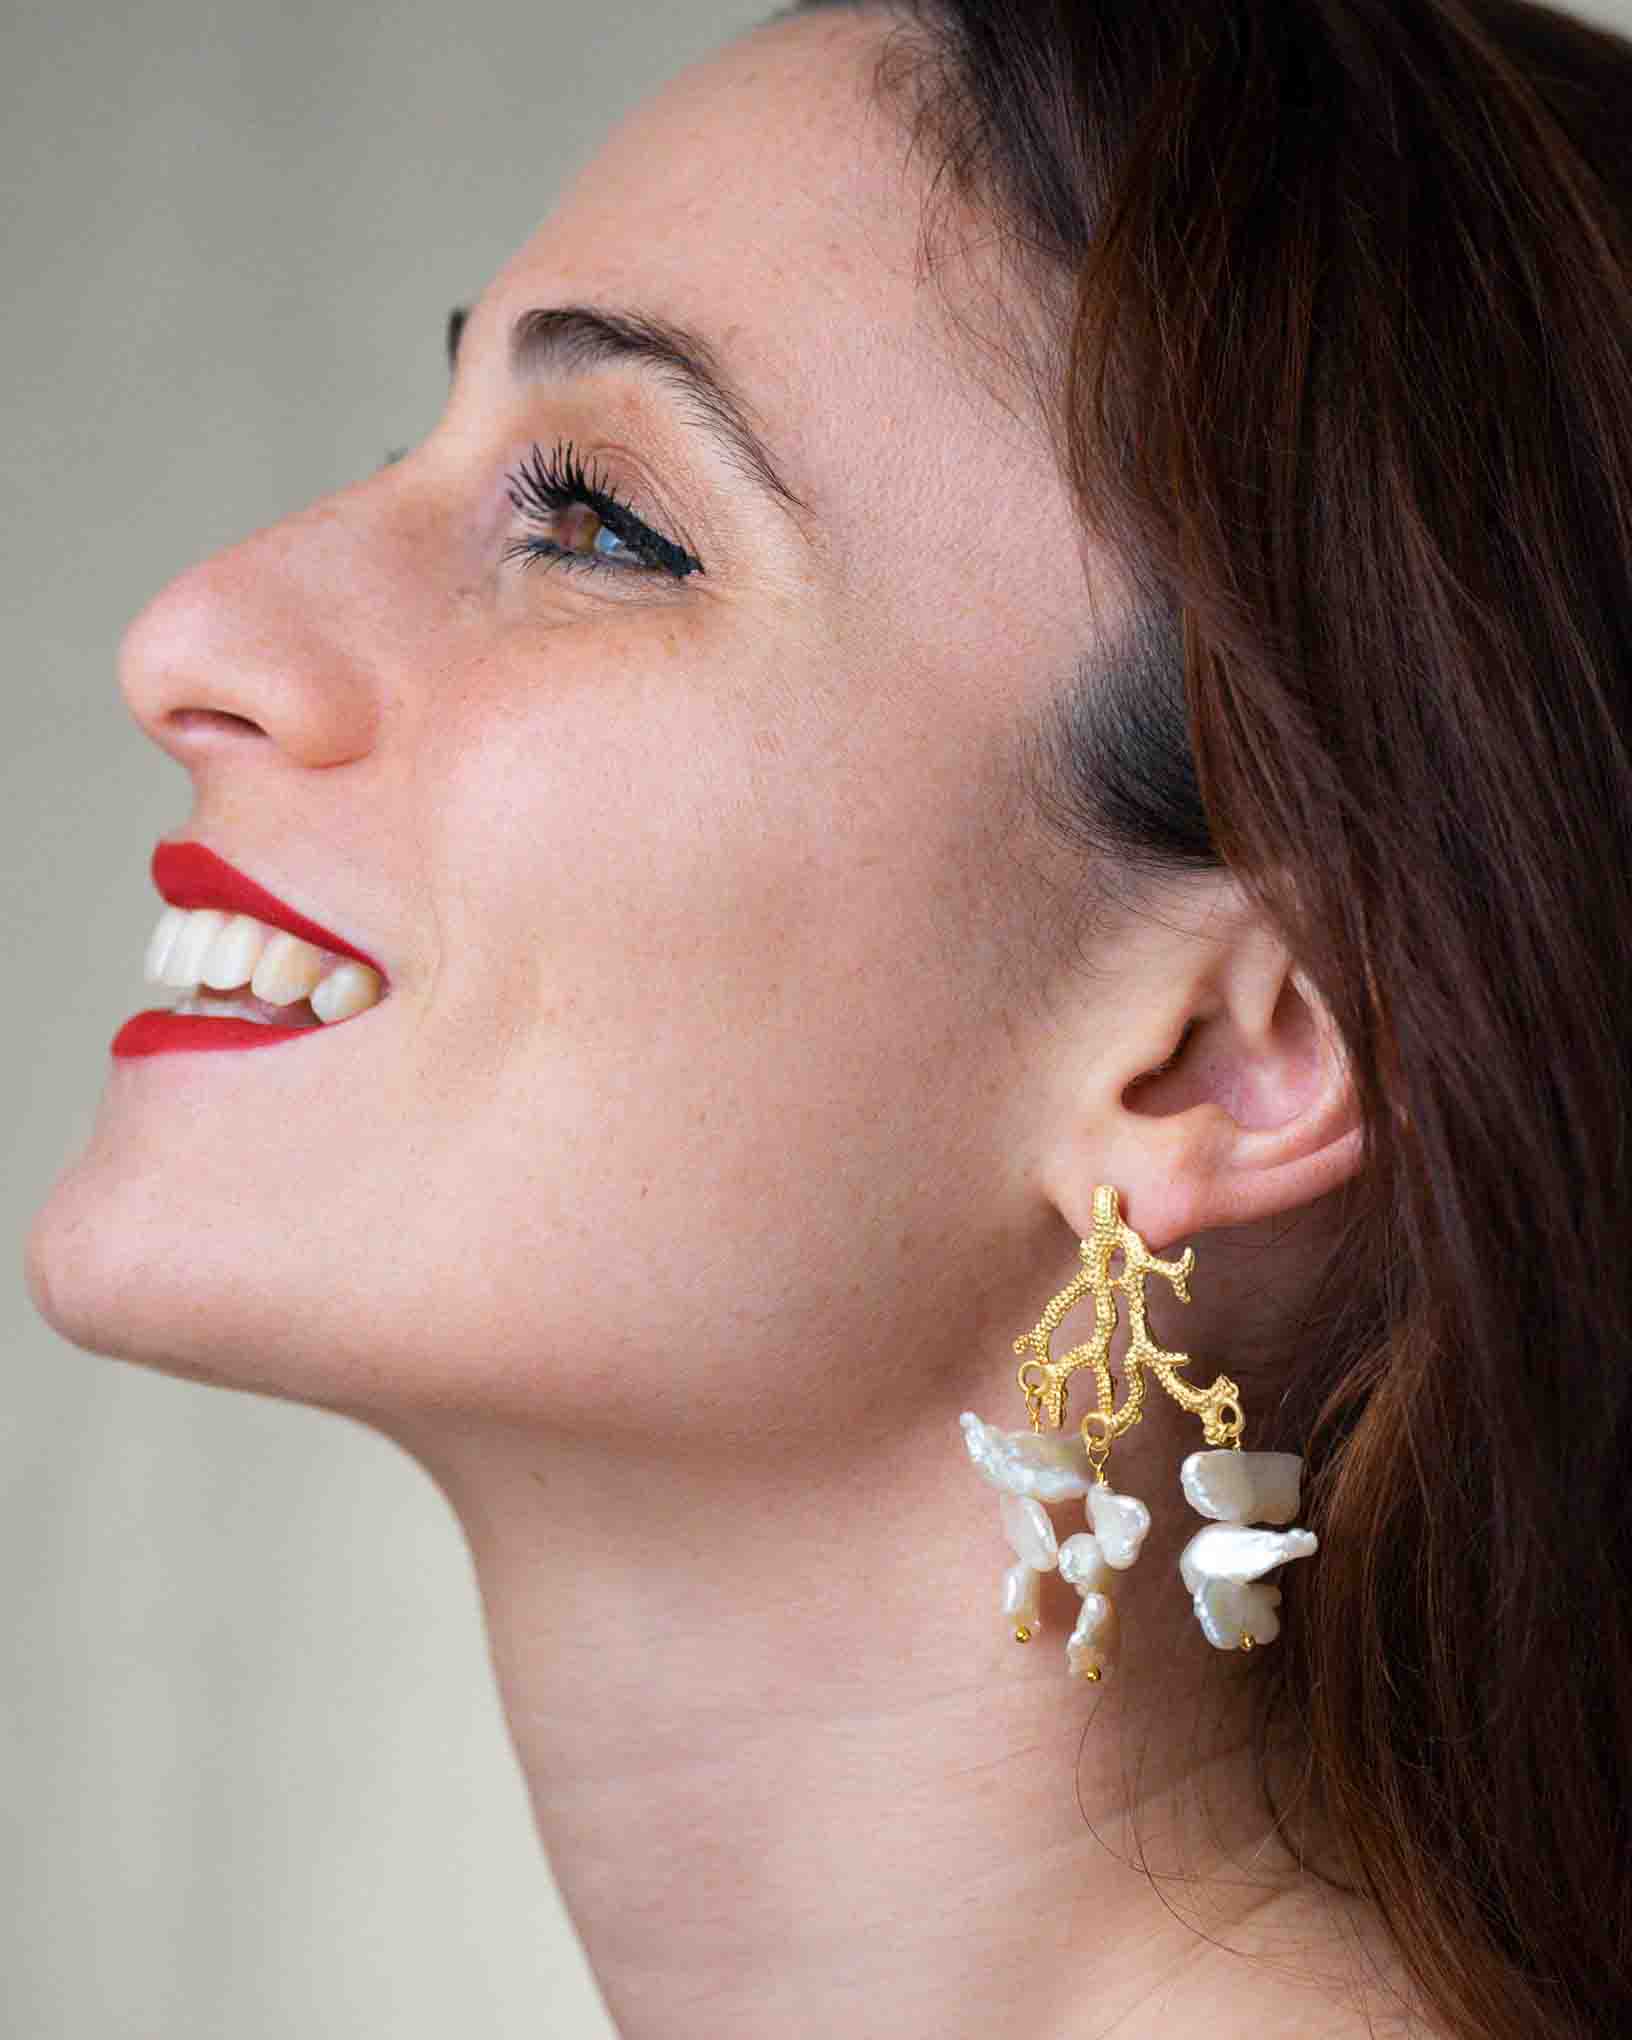 Ohrring Barriera Corallina aus der Kollektion Perle e Coralli von Donna Rachele Jewelry